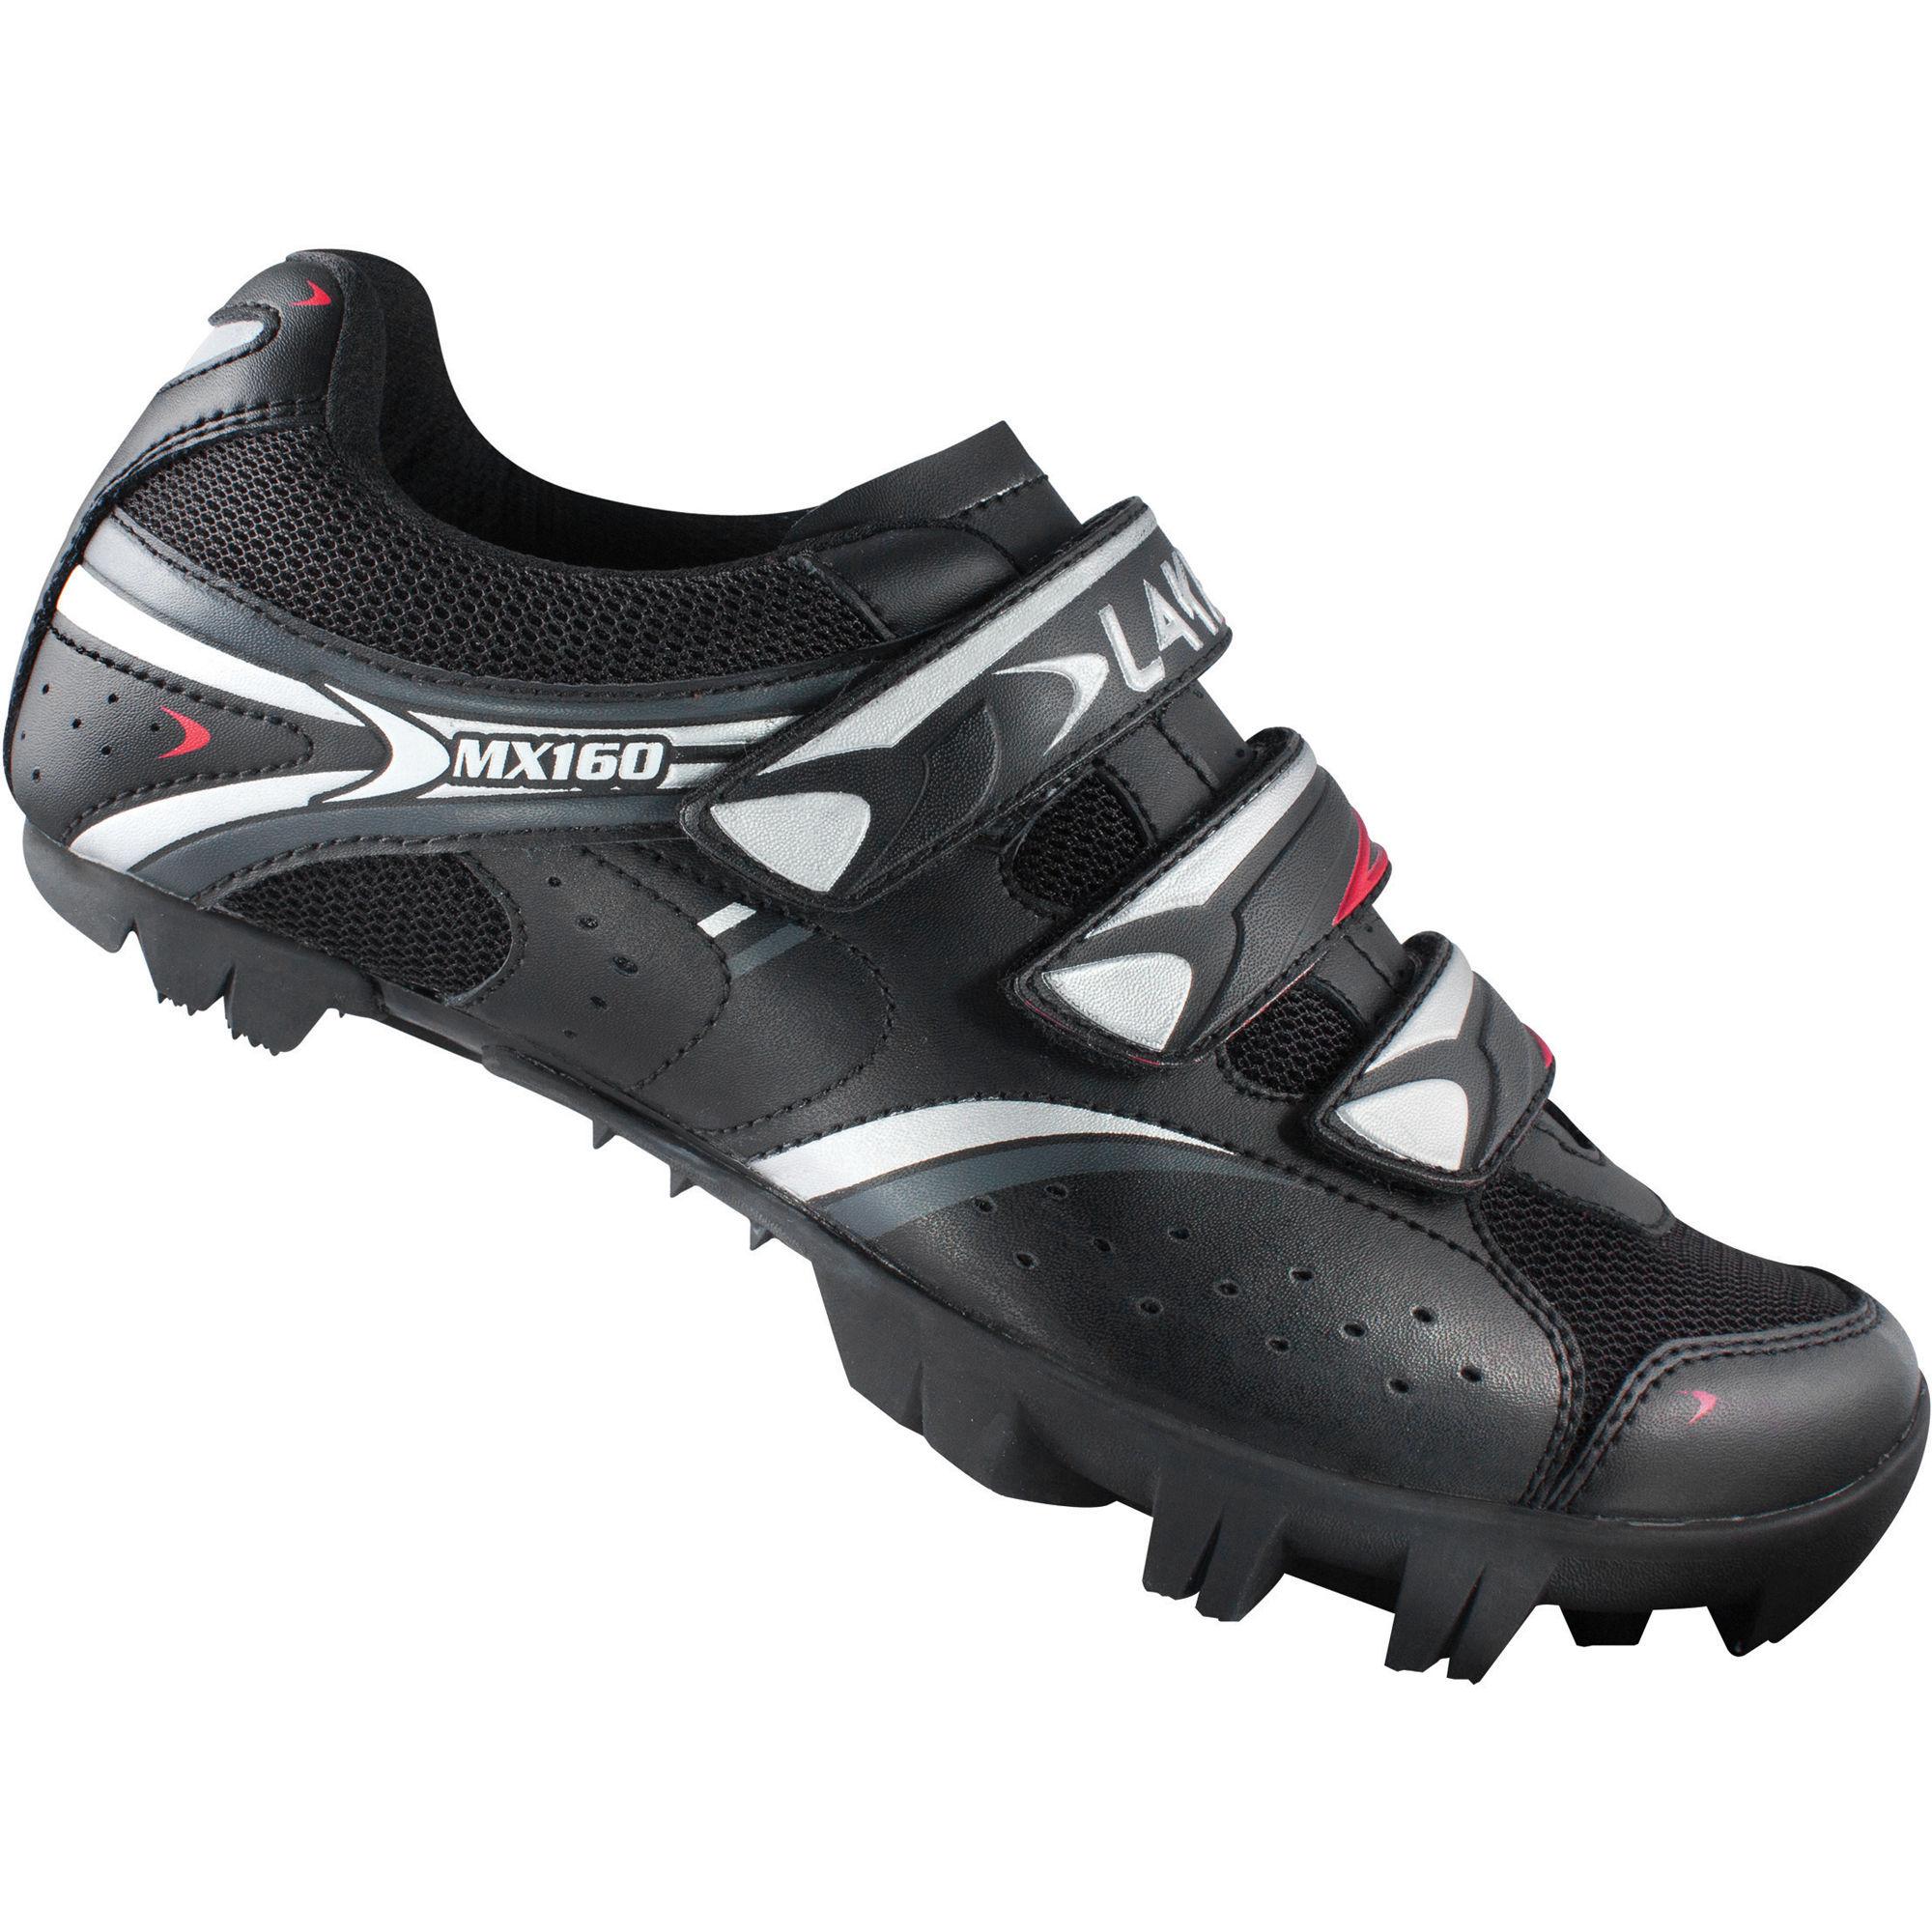 Foto Zapatillas de MTB Lake - MX160 - 42 Black | Calzado de trail